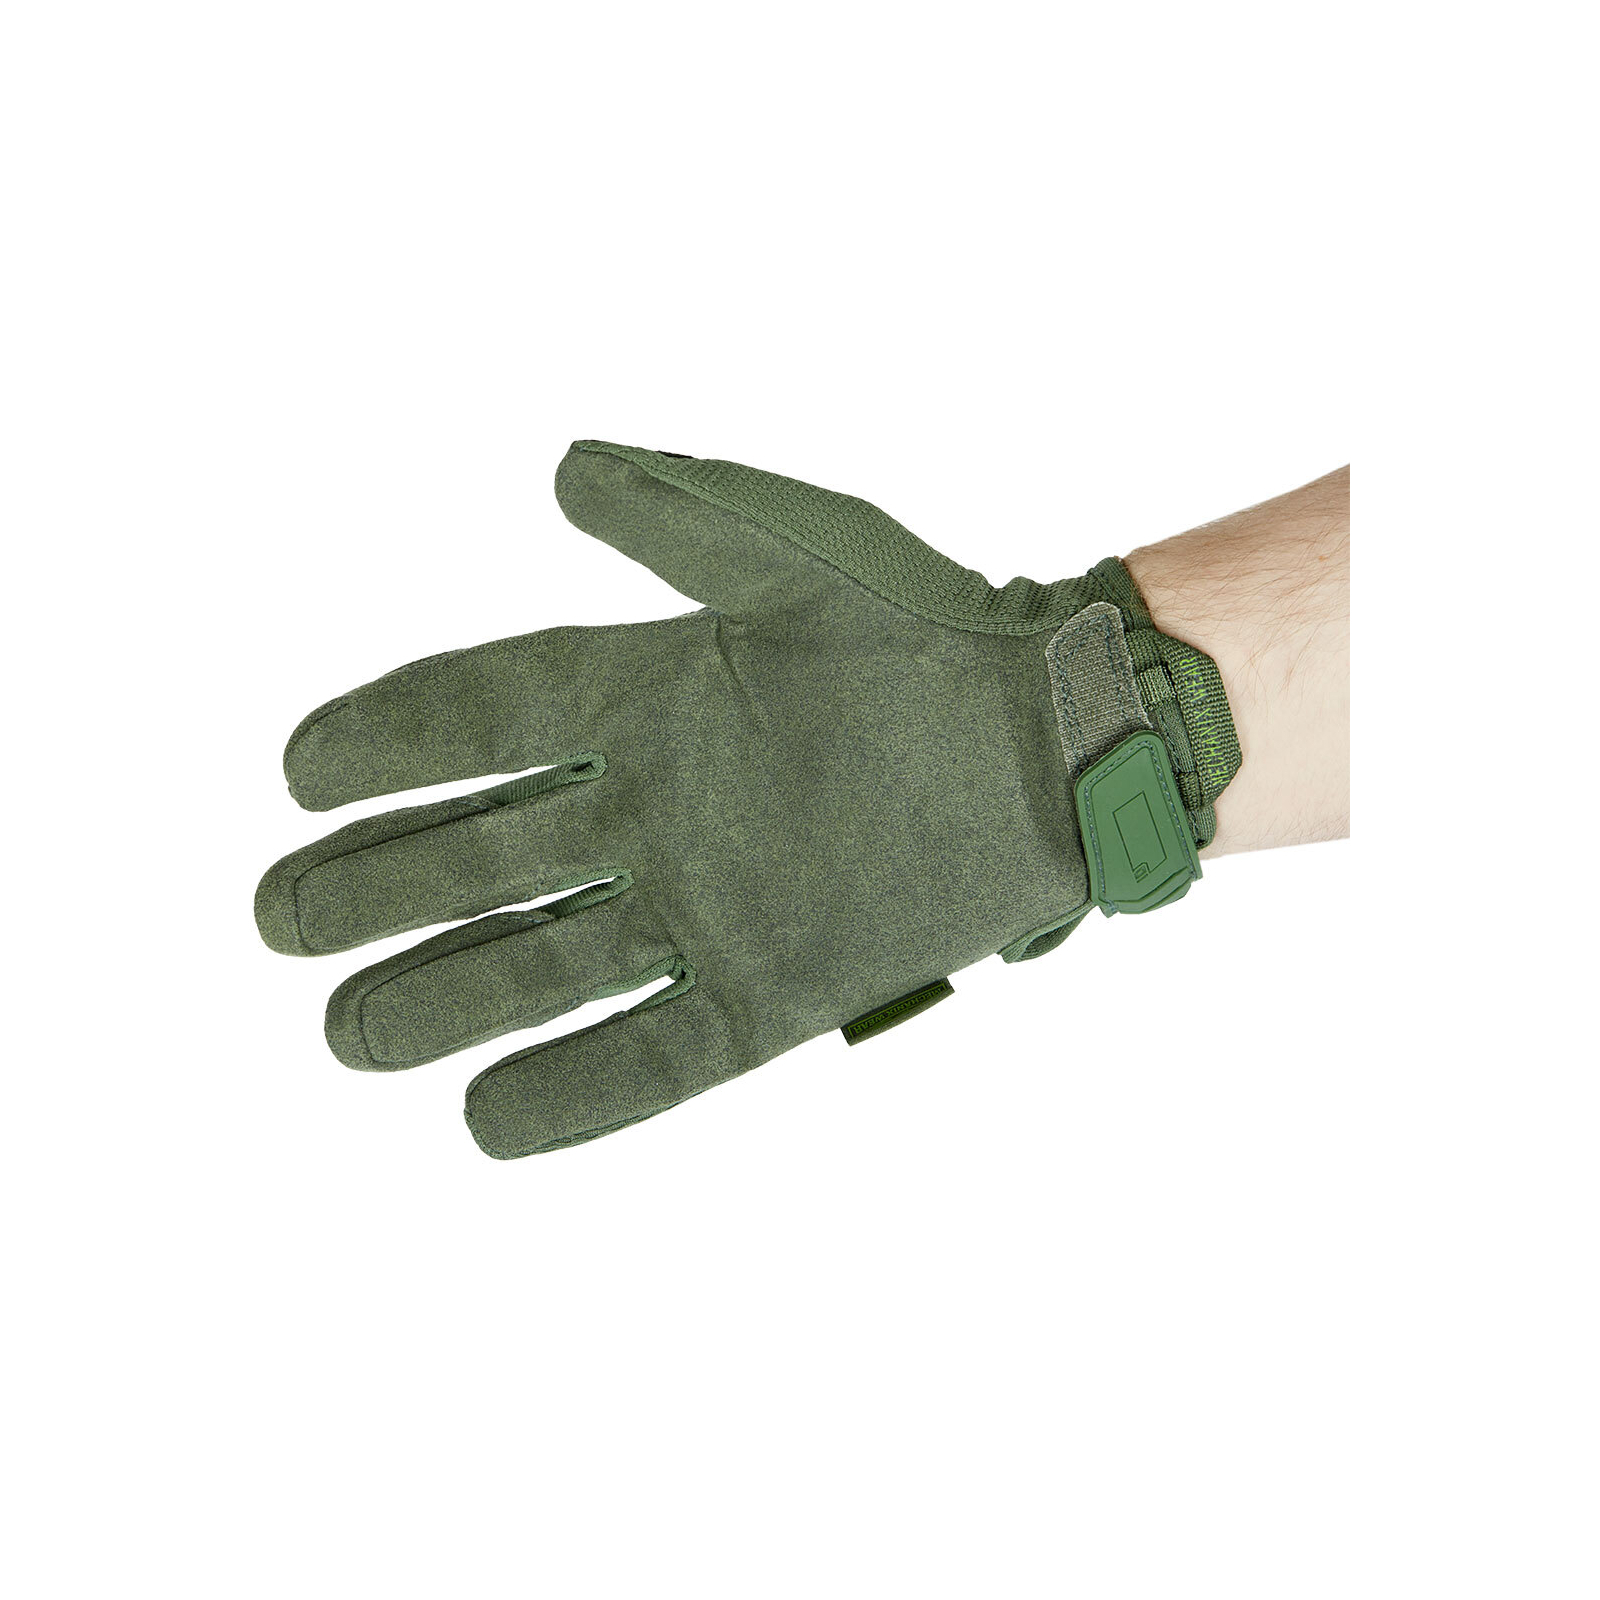 Тактические перчатки Mechanix Original M Olive Drab (MG-60-009) изображение 2